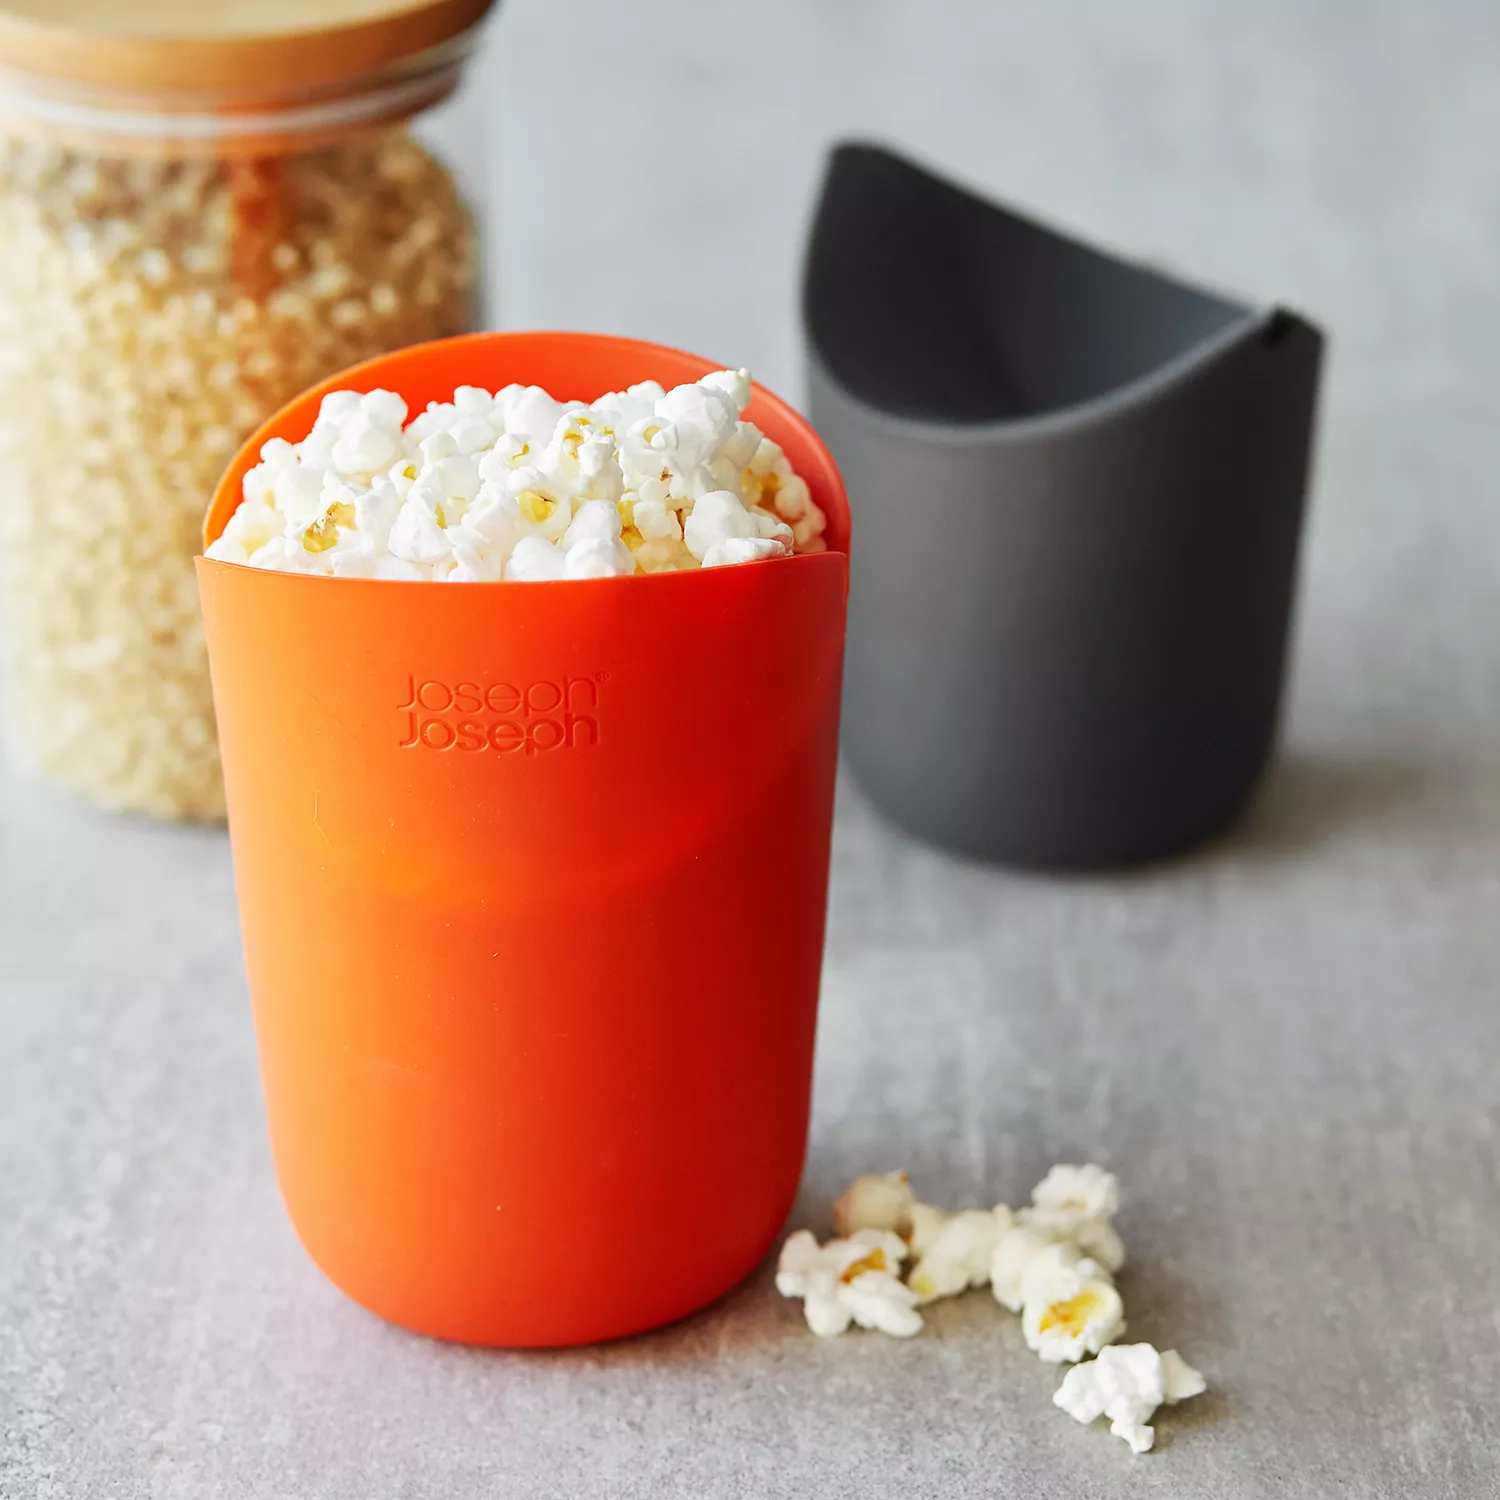 Joseph Joseph M-Cuisine Microwave Popcorn Popper Maker Single Serve Portion  Silicone Food Safe, 2-piece, Multicolored